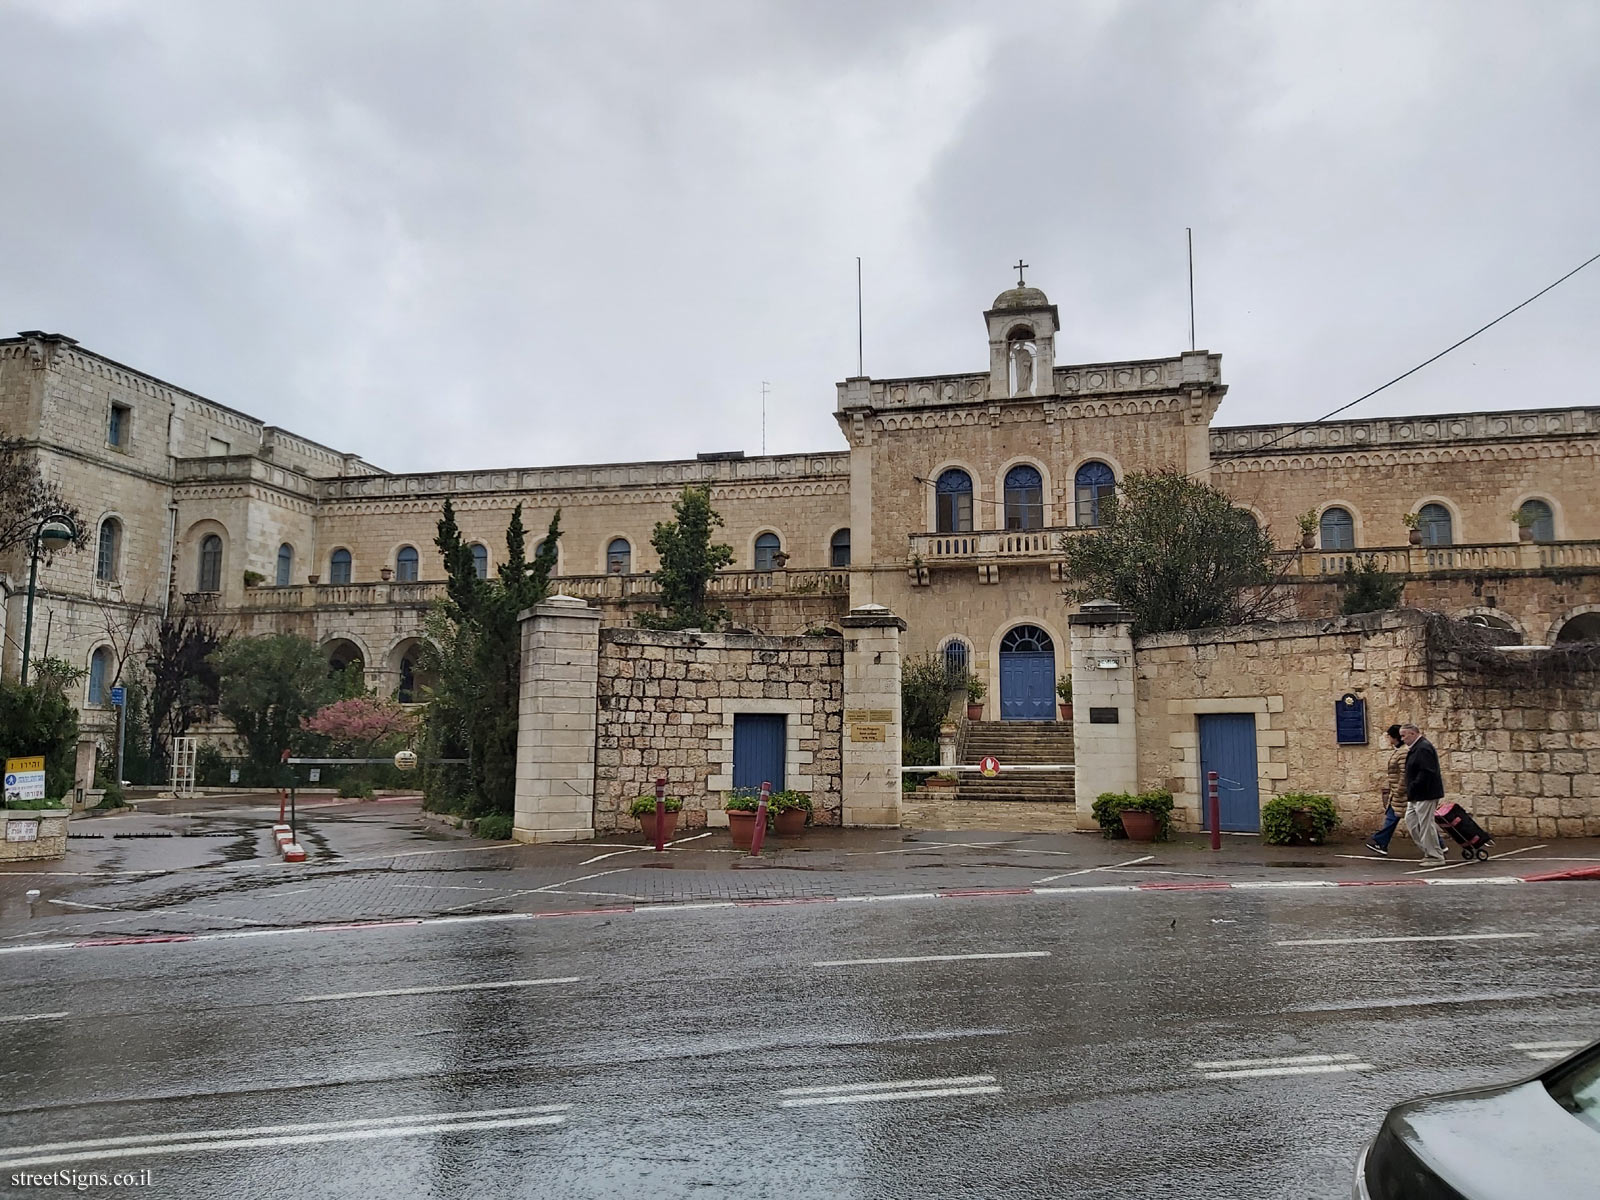 The Built Heritage - Ratisbonne Monastery - Shmu’el ha-Nagid St 26, Jerusalem, Israel